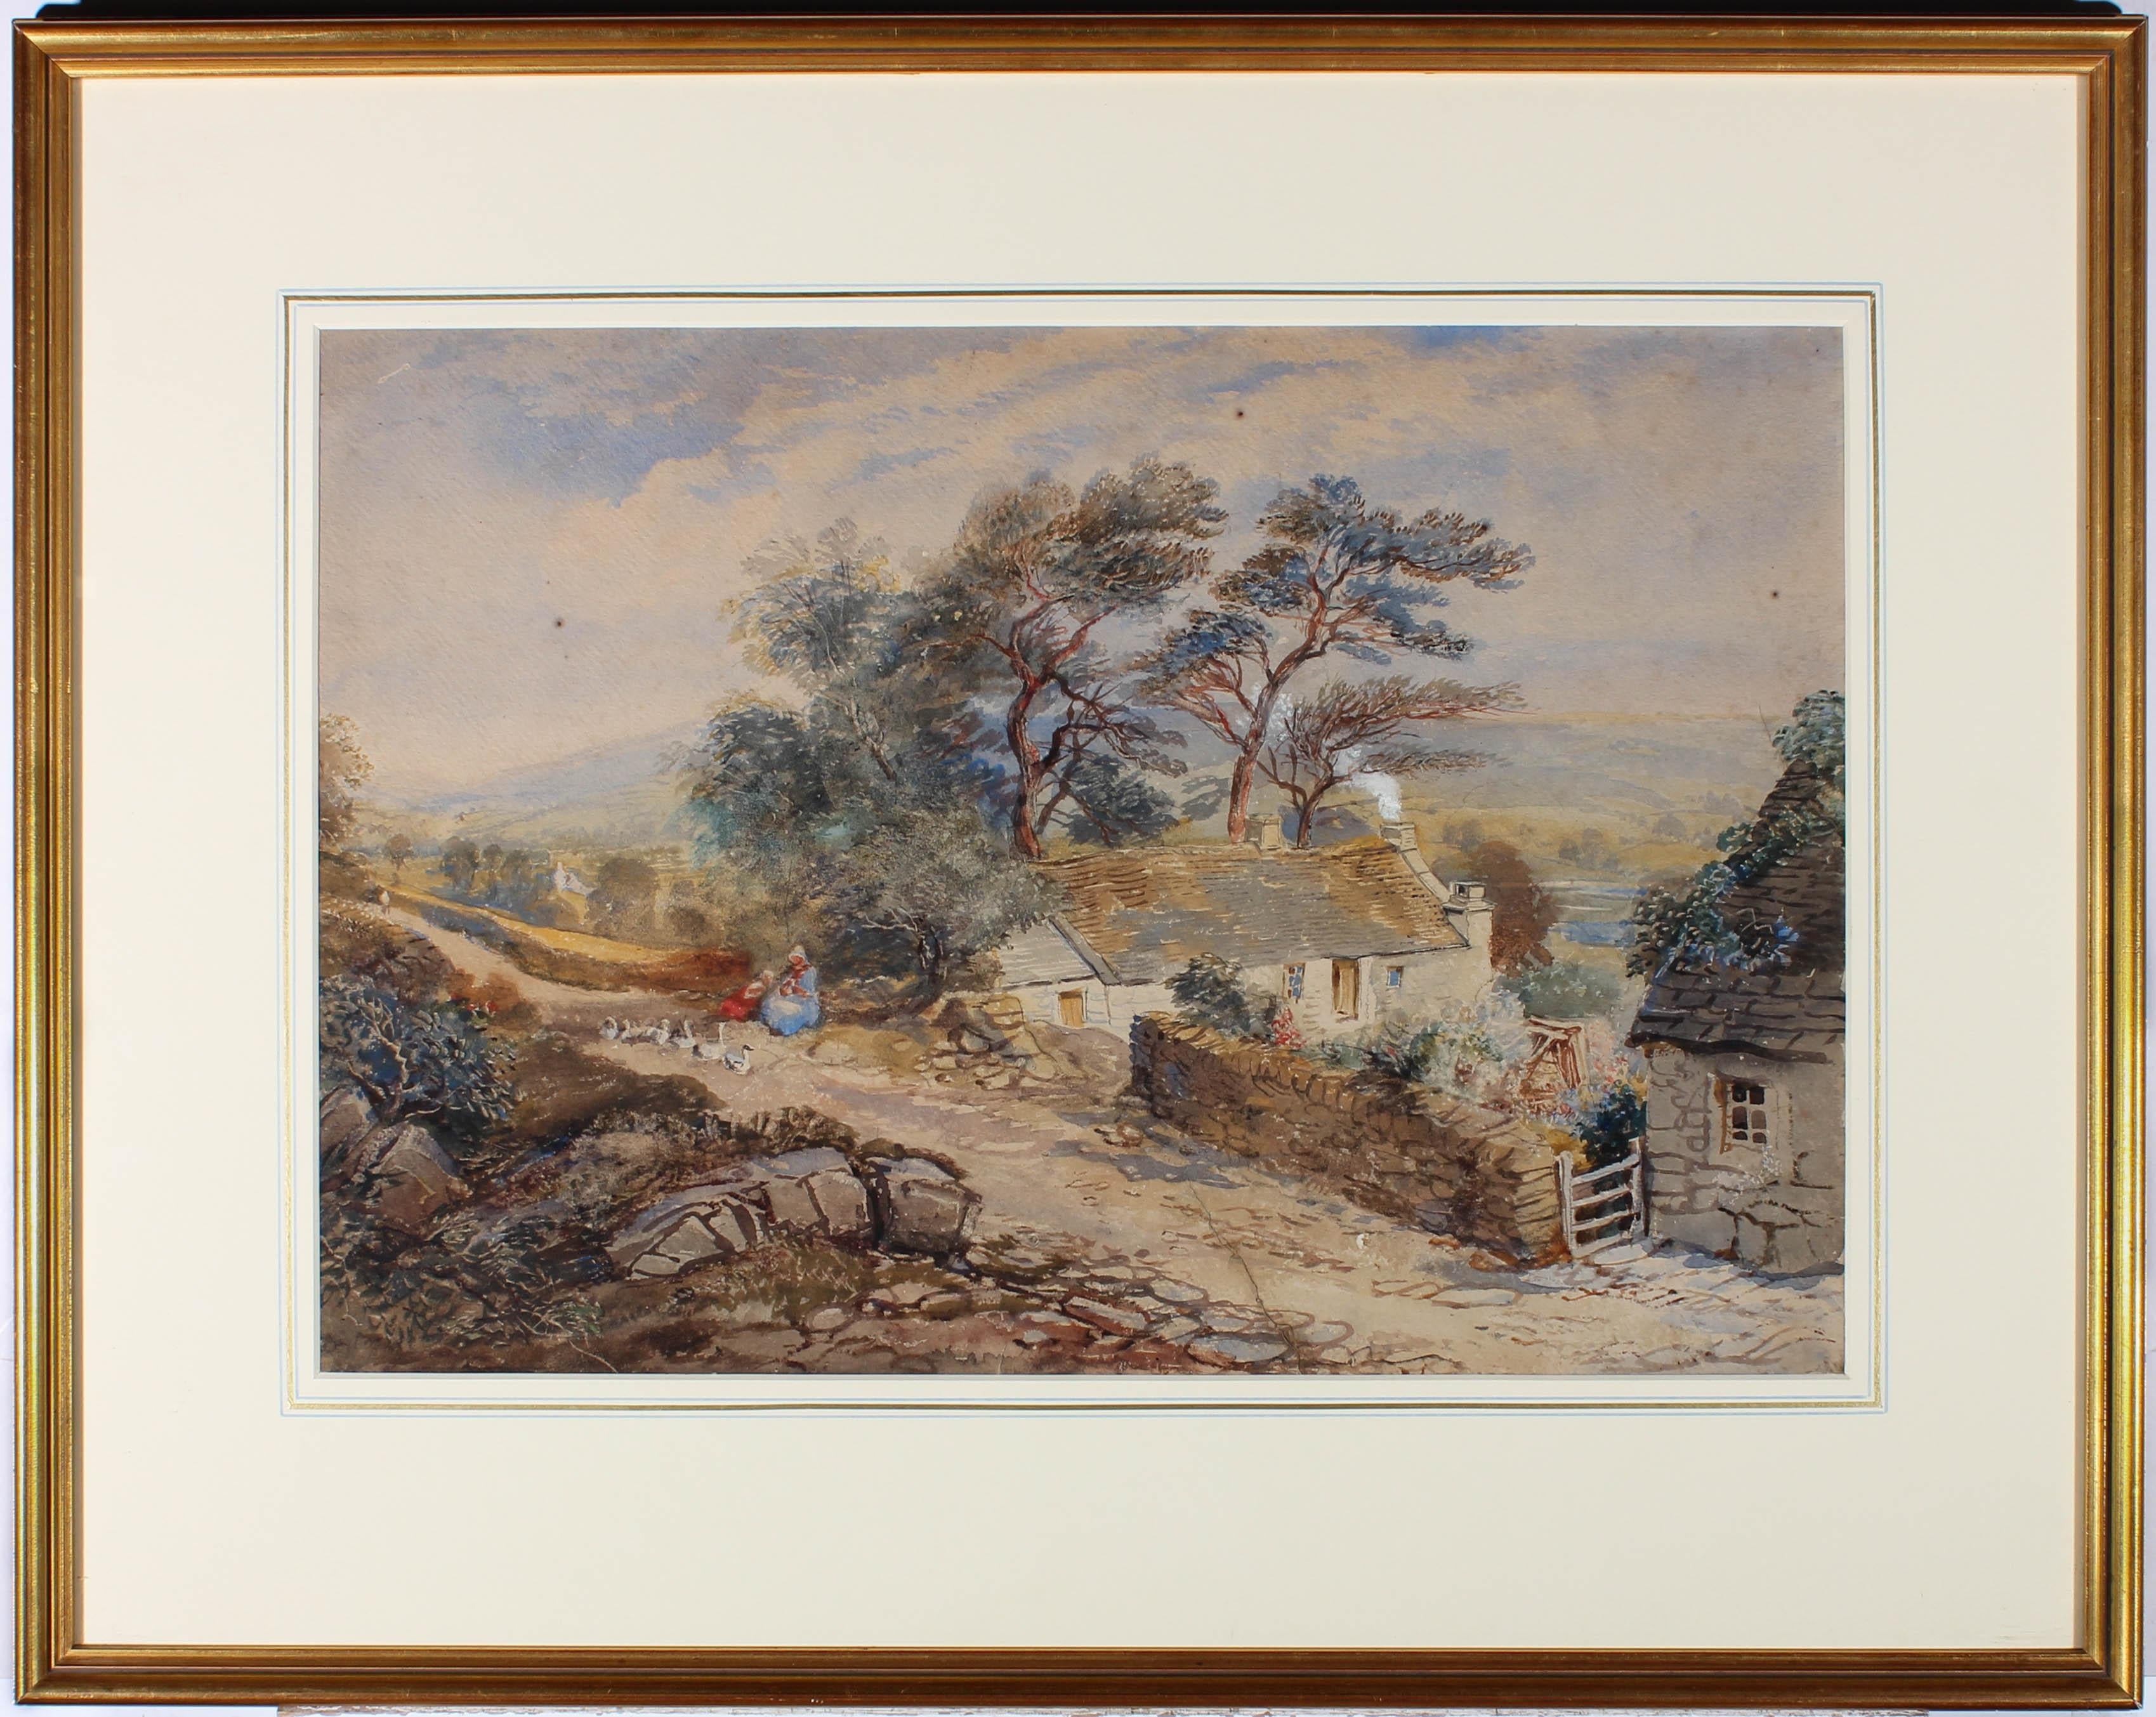 Unknown Landscape Art - 19th Century Watercolour - The Farmstead